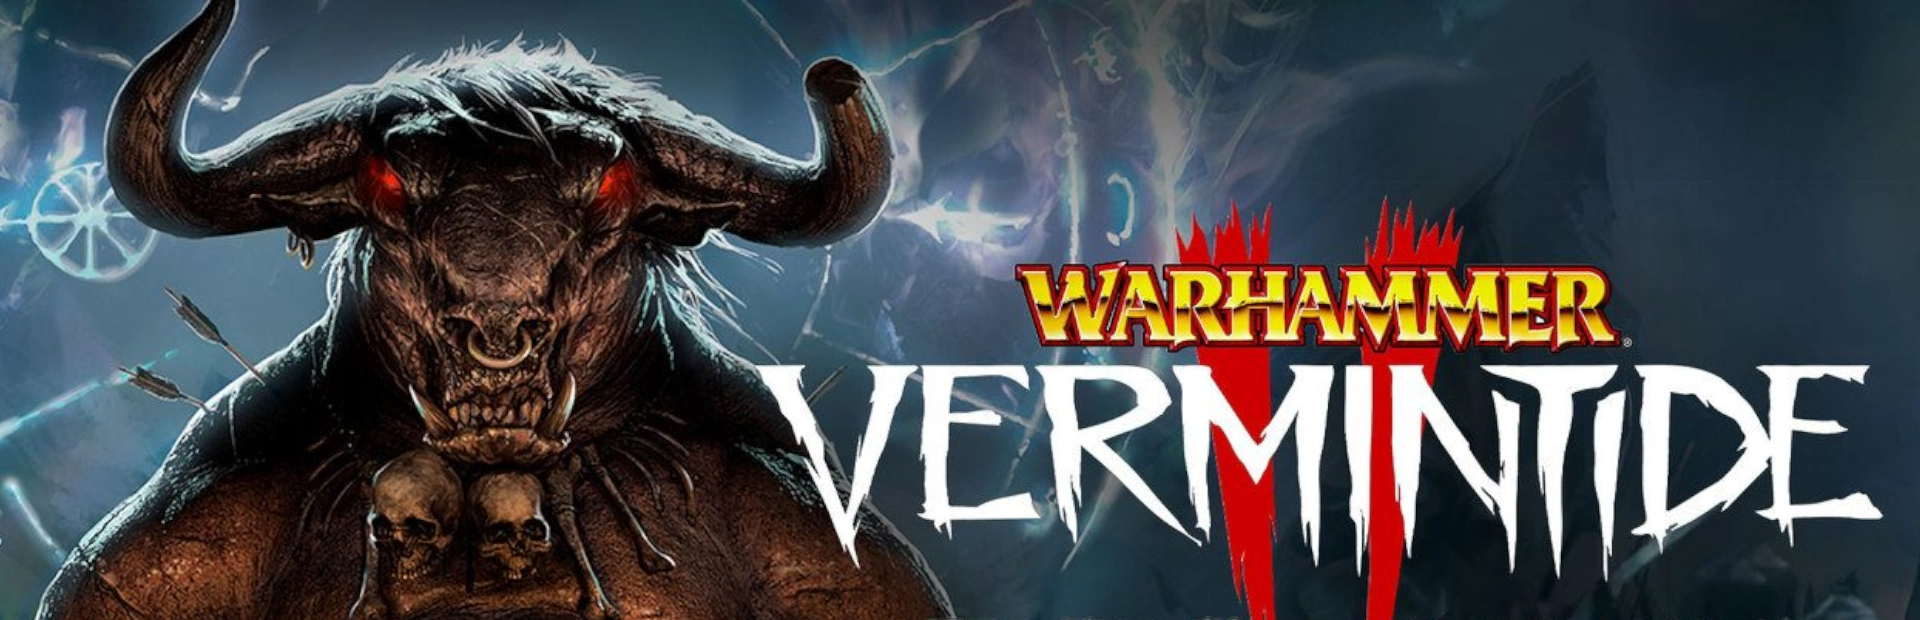 دانلود بازی Warhammer: Vermintide 2 برای کامپیوتر | گیمباتو